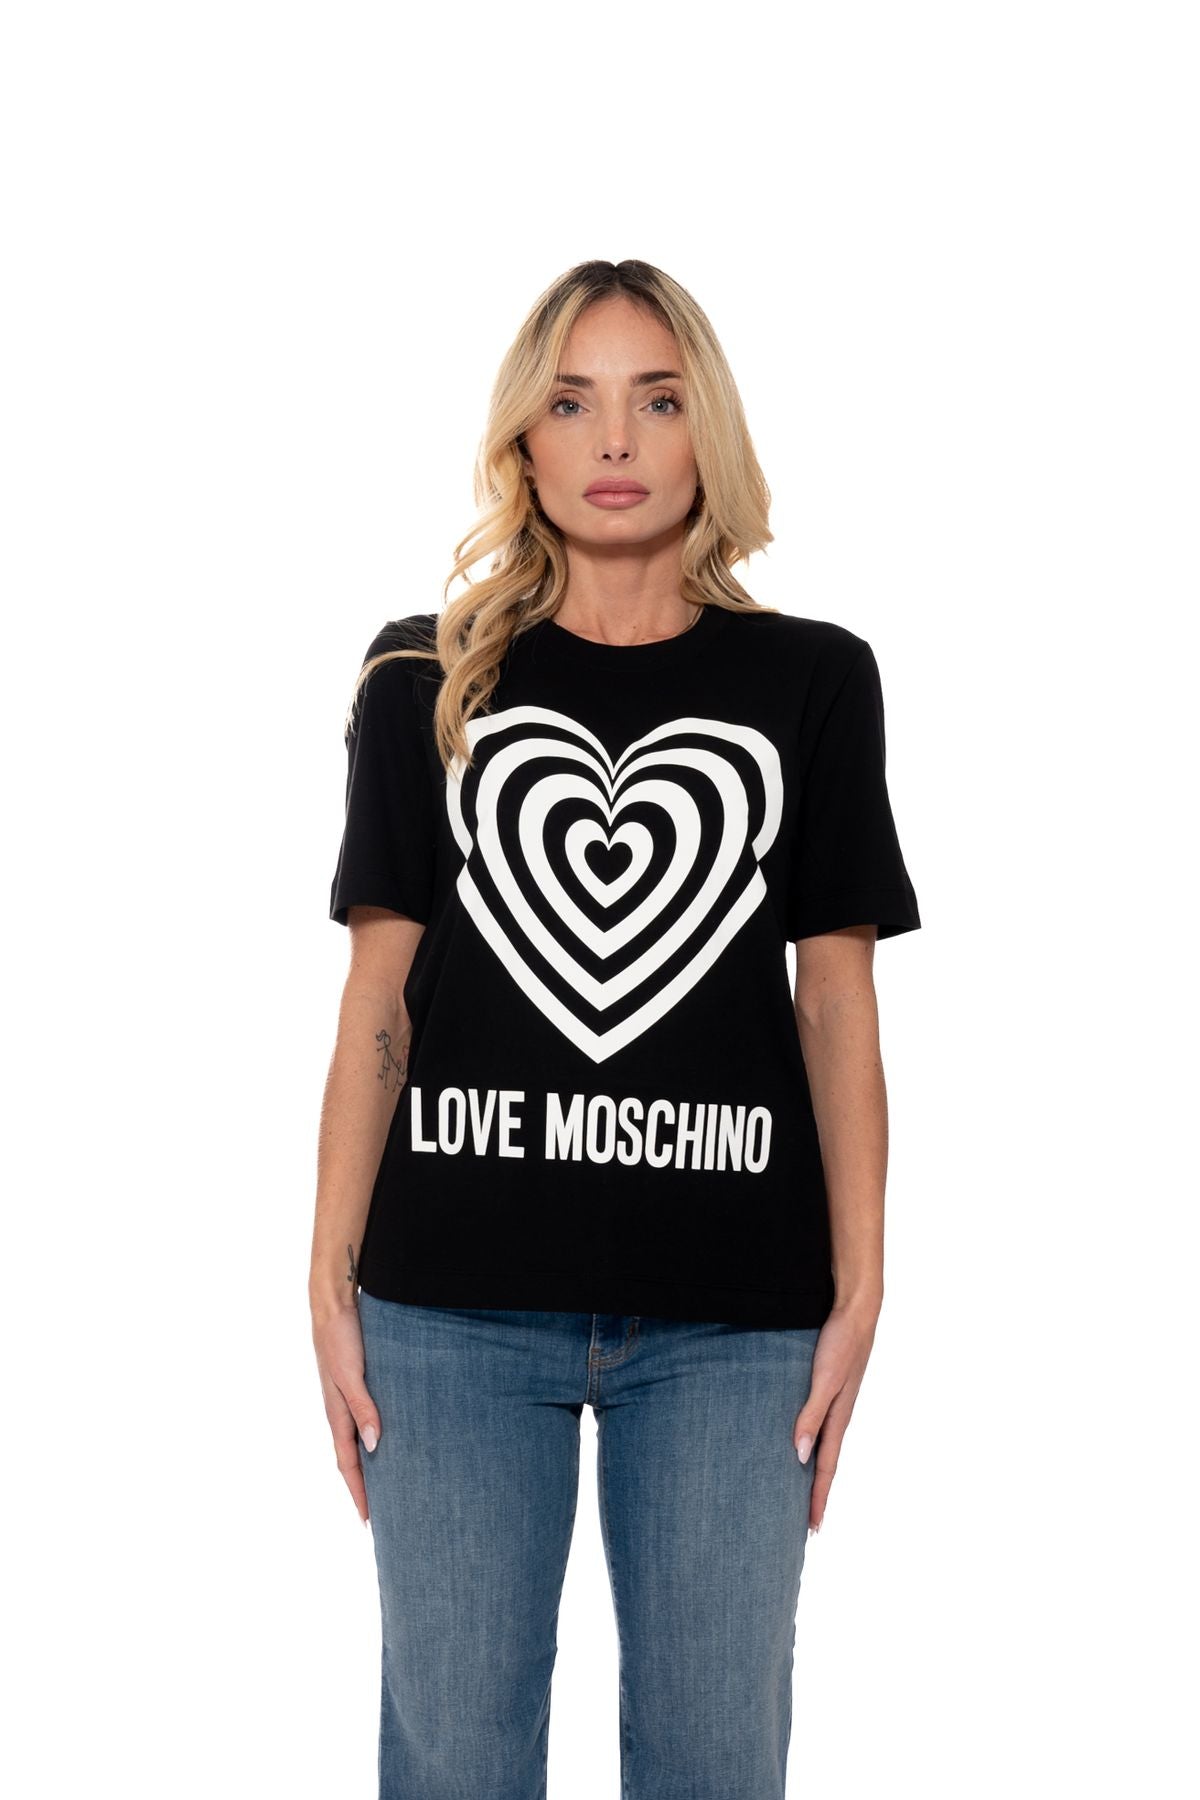 w4h0637m3876c74 - t-shirt - LOVE MOSCHINO